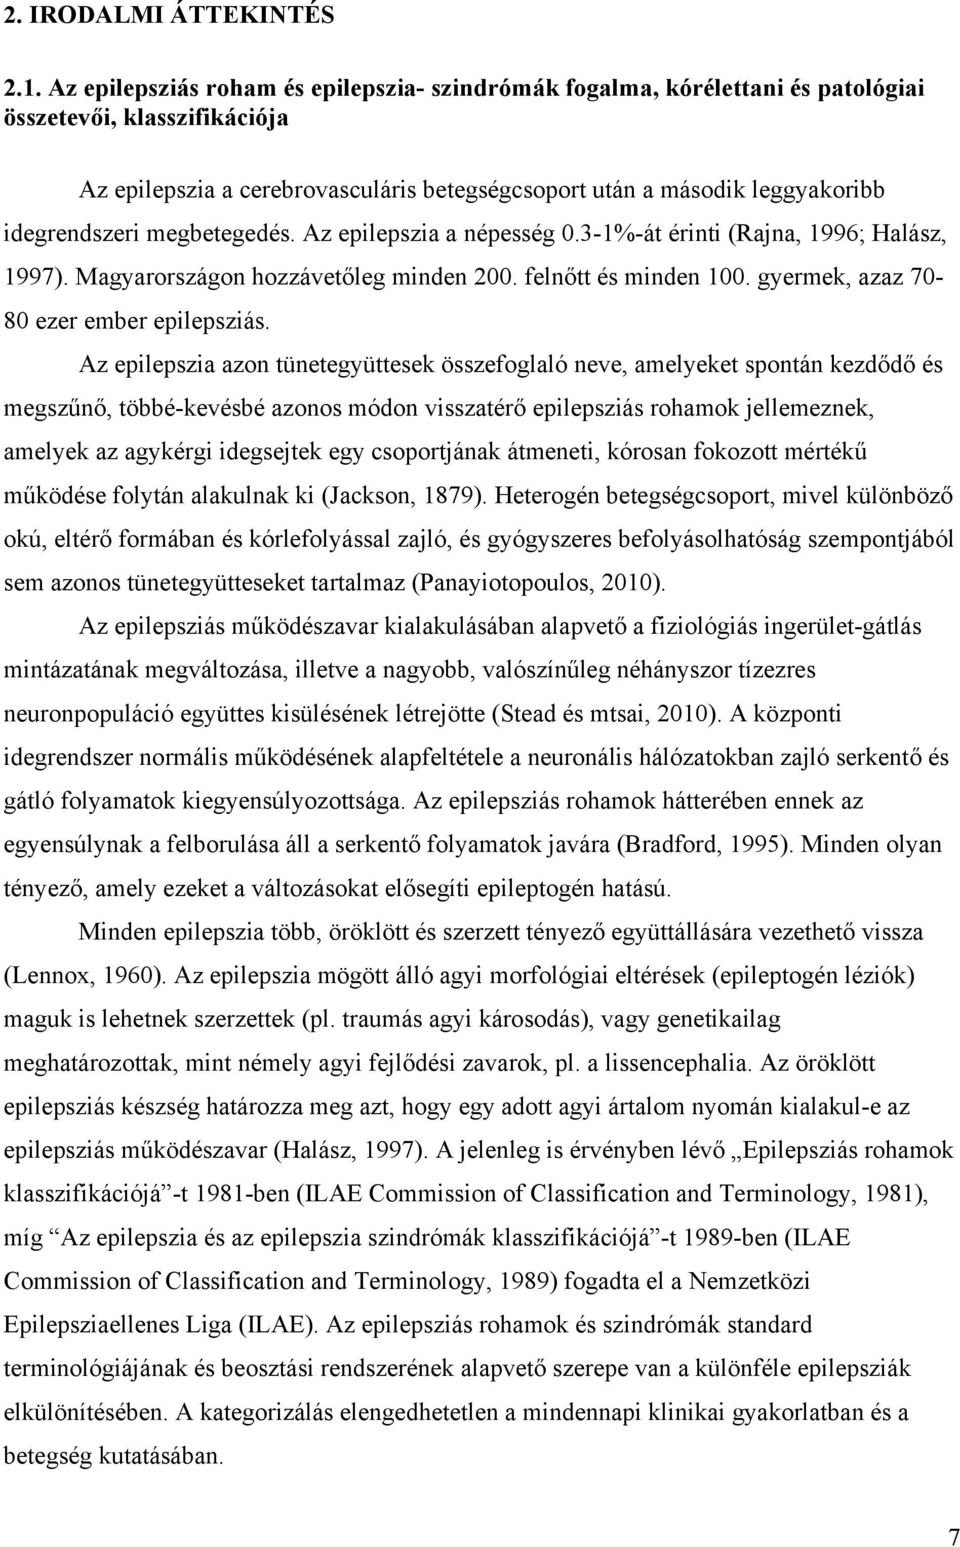 idegrendszeri megbetegedés. Az epilepszia a népesség 0.3-1%-át érinti (Rajna, 1996; Halász, 1997). Magyarországon hozzávetőleg minden 200. felnőtt és minden 100.